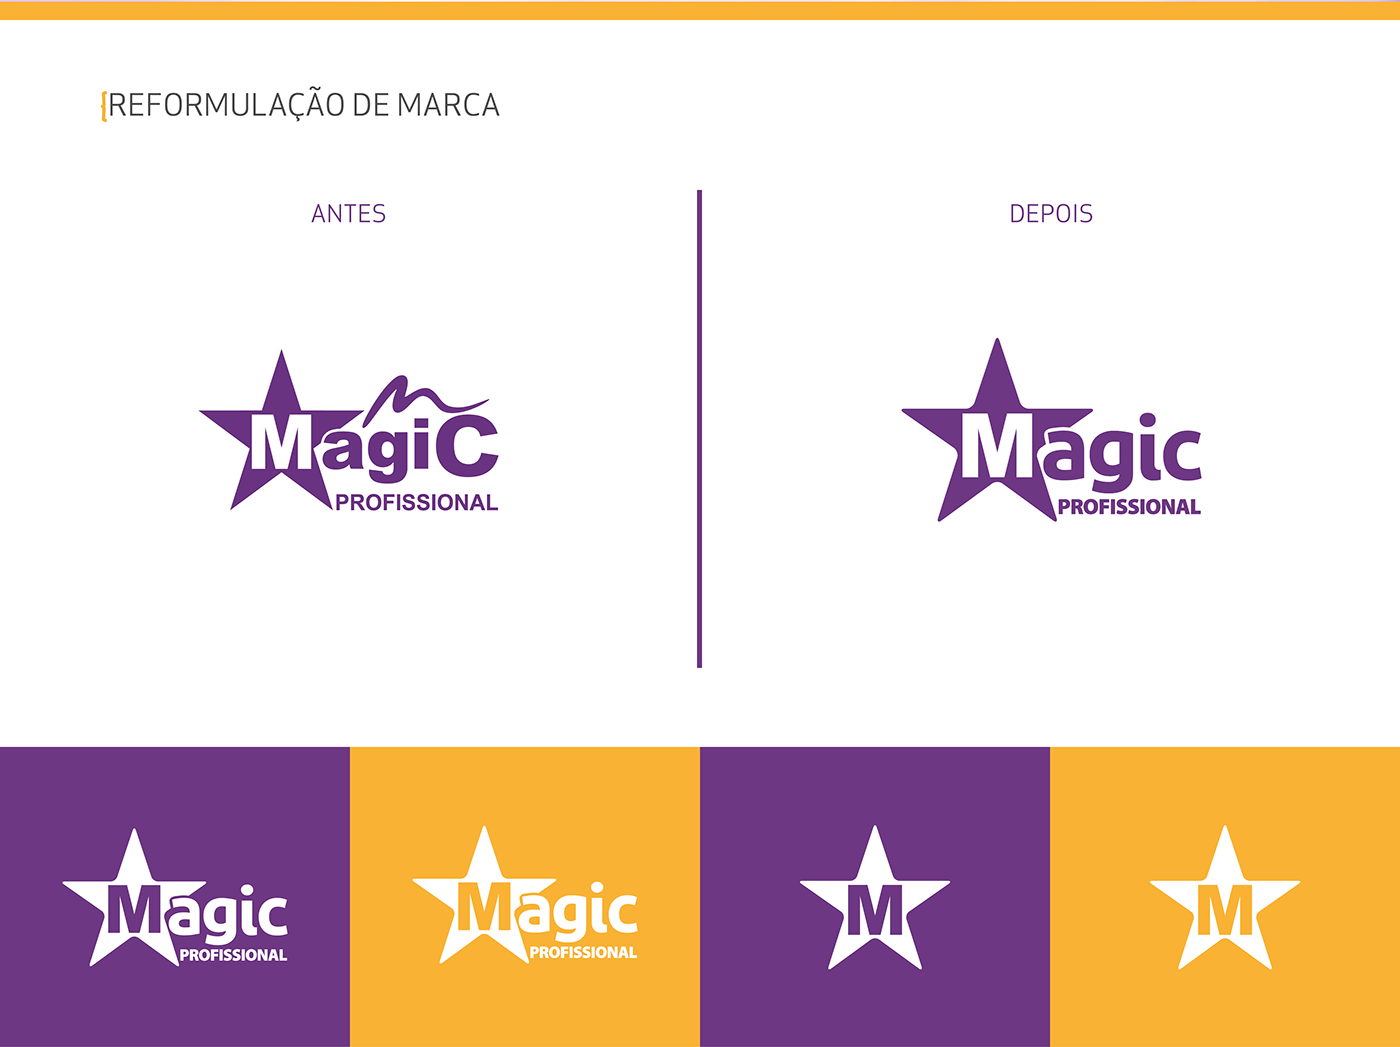 Magic   profissional redesign papelaria impressão Video institucional agenda anúncio revista magazine brand video